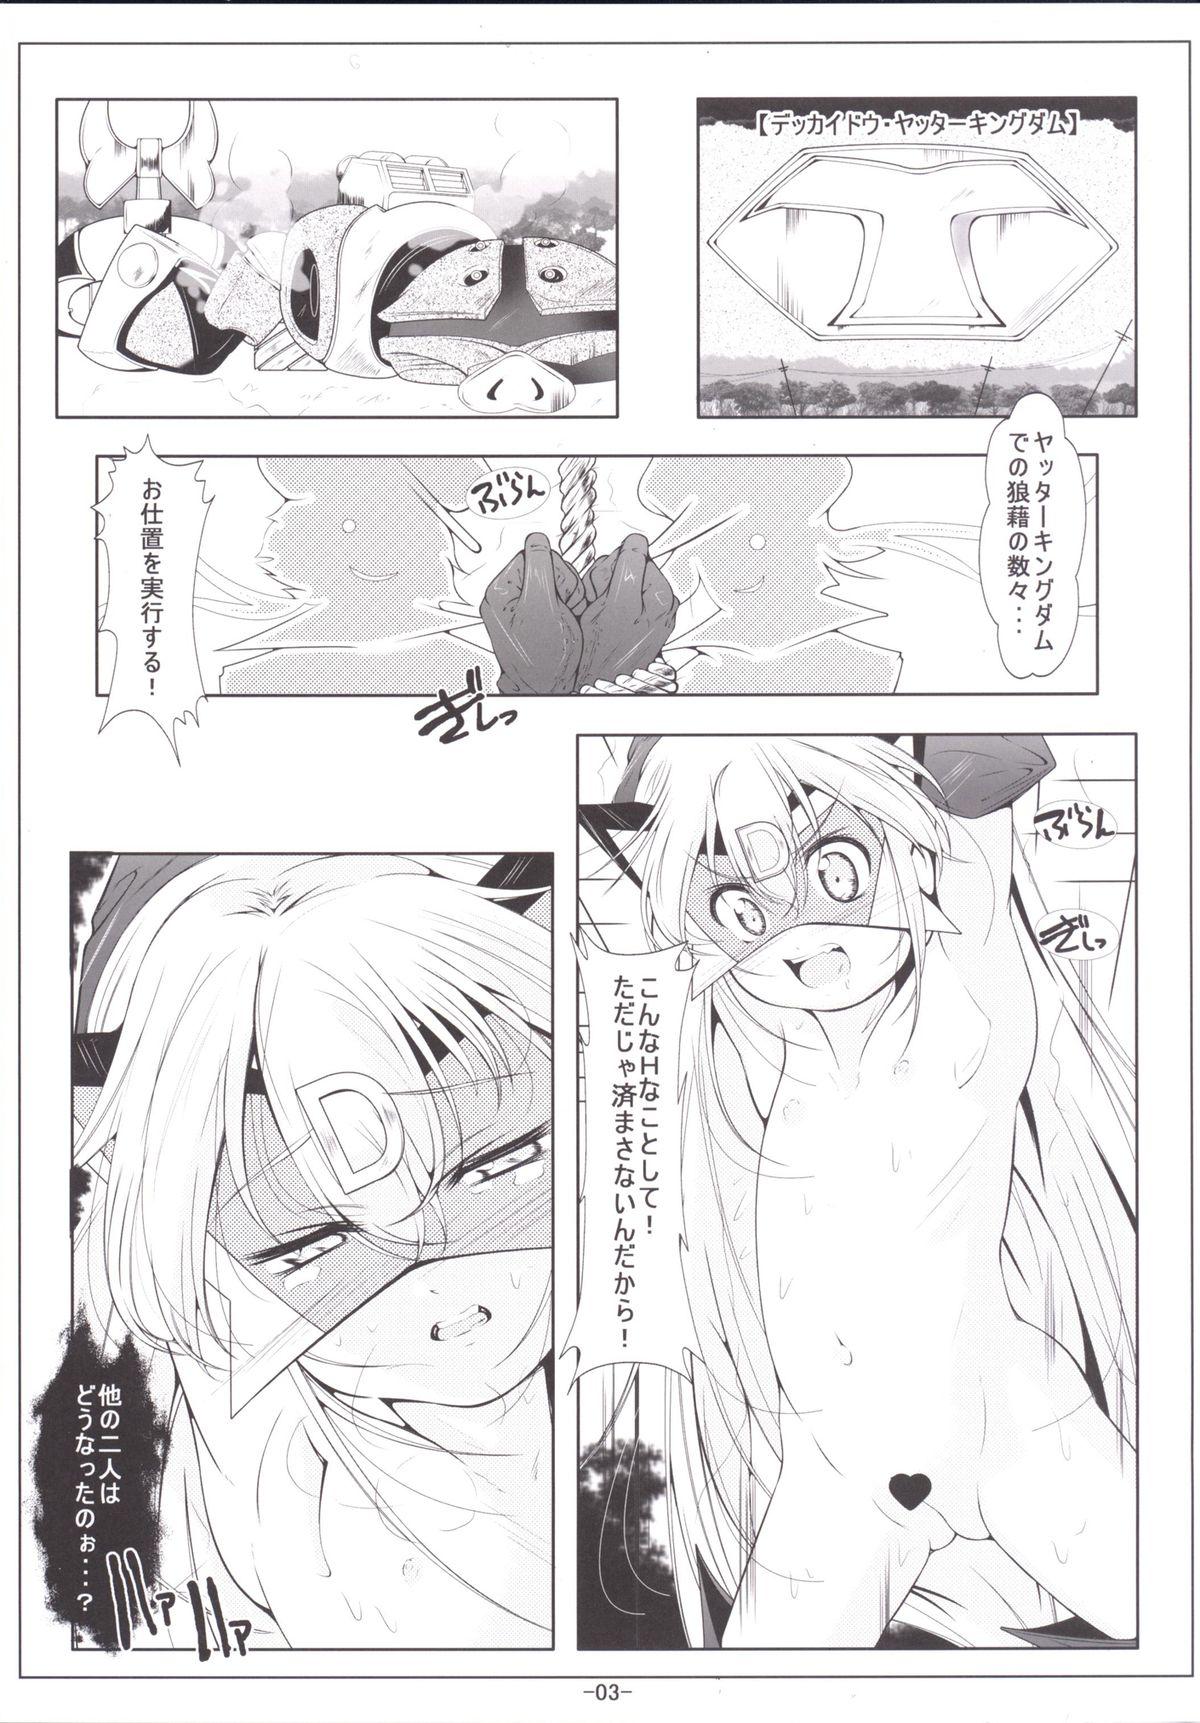 Toys Leopard-chan Oshiri no Ana de Yoru no Oshigoto - Yoru no yatterman Real Amateurs - Page 4